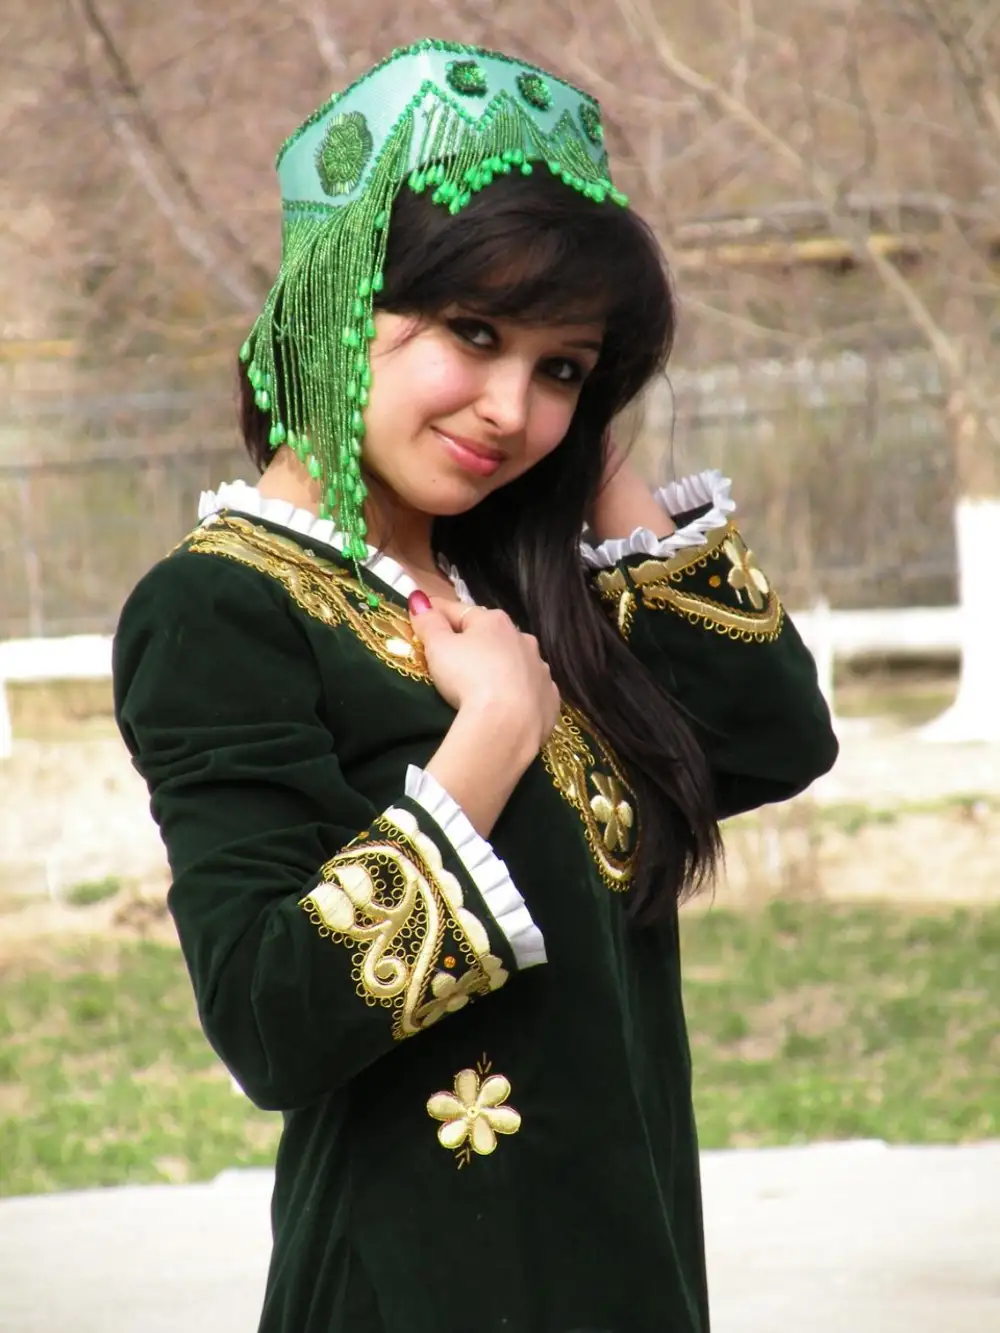 Йиғлаган қизлар 60. Киргиз гузаллар. Узбекские женщины. Таджикские девушки. Узбек кизлари.